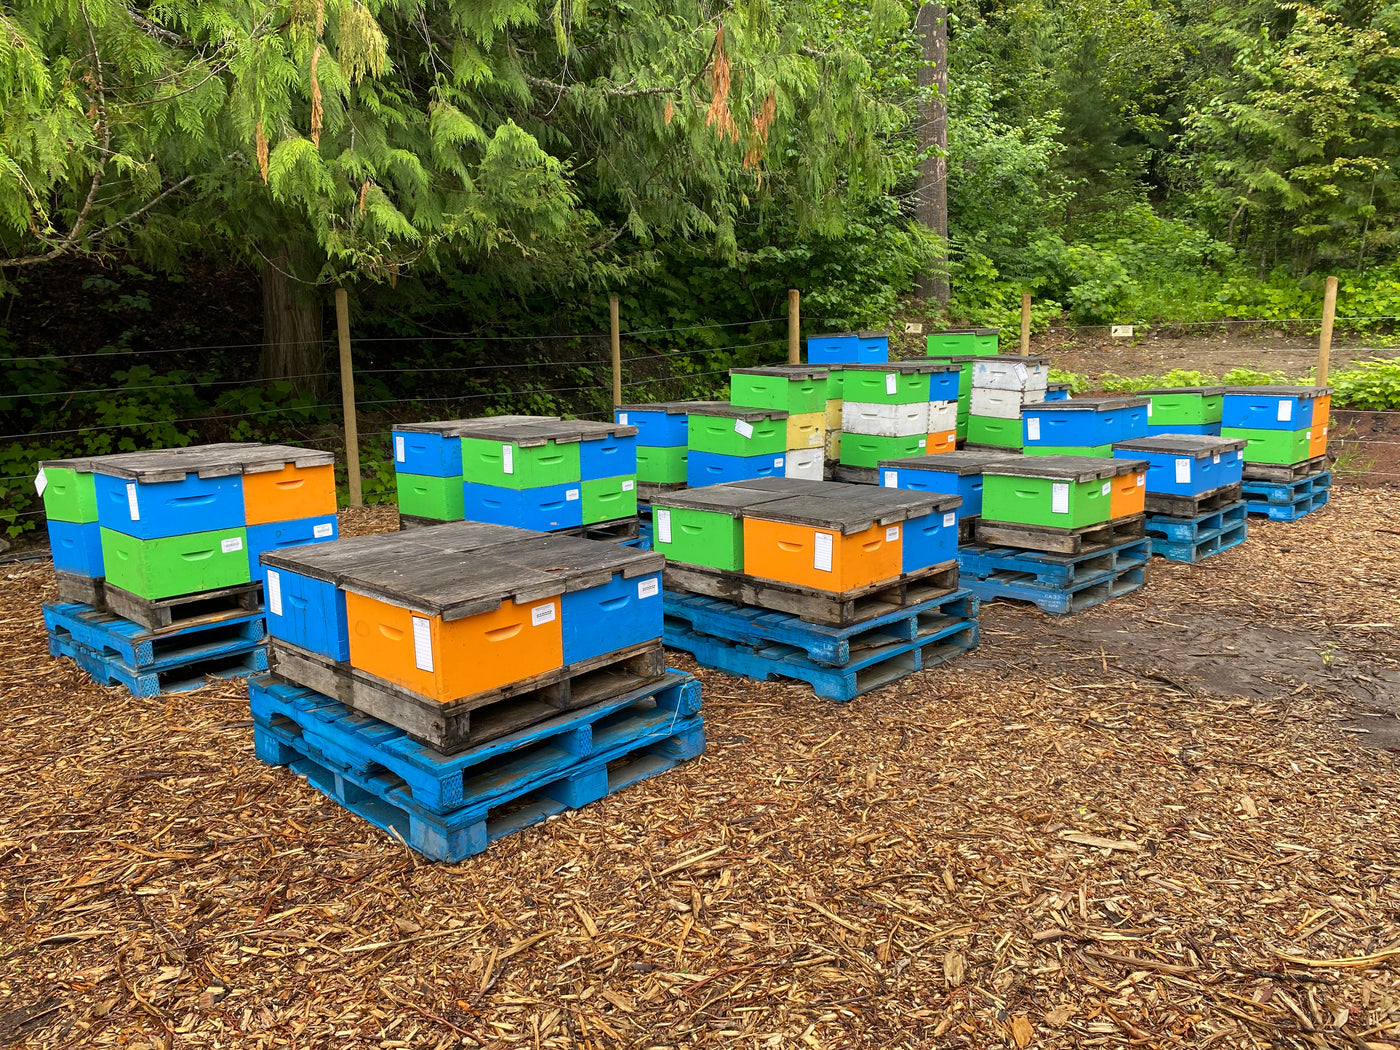 BC Apiary (Bee Hives)